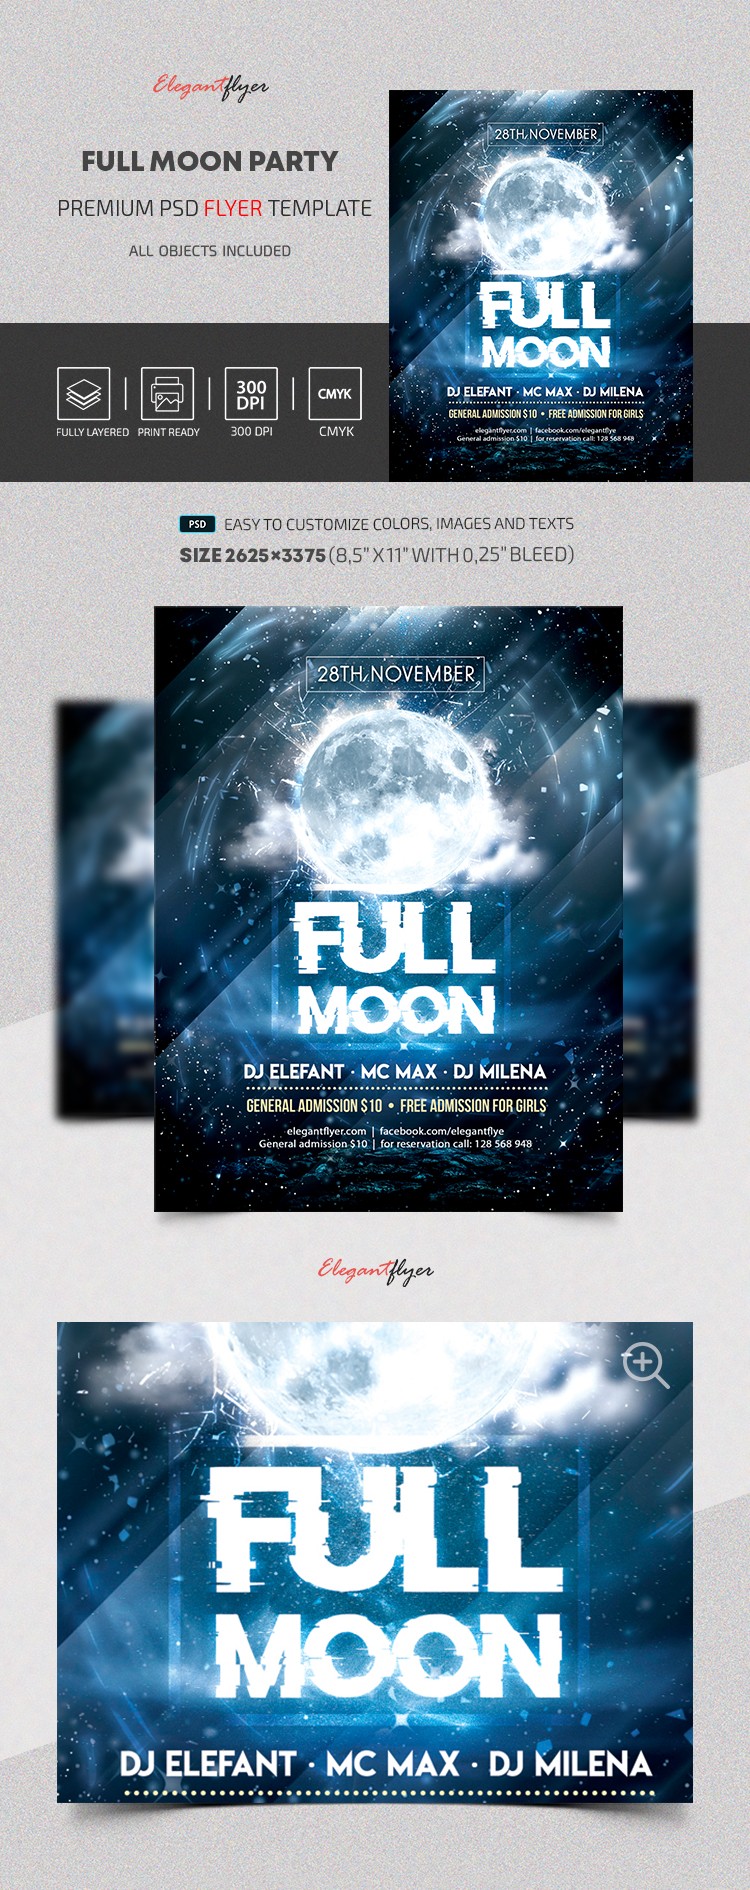 Full Moon Party by ElegantFlyer